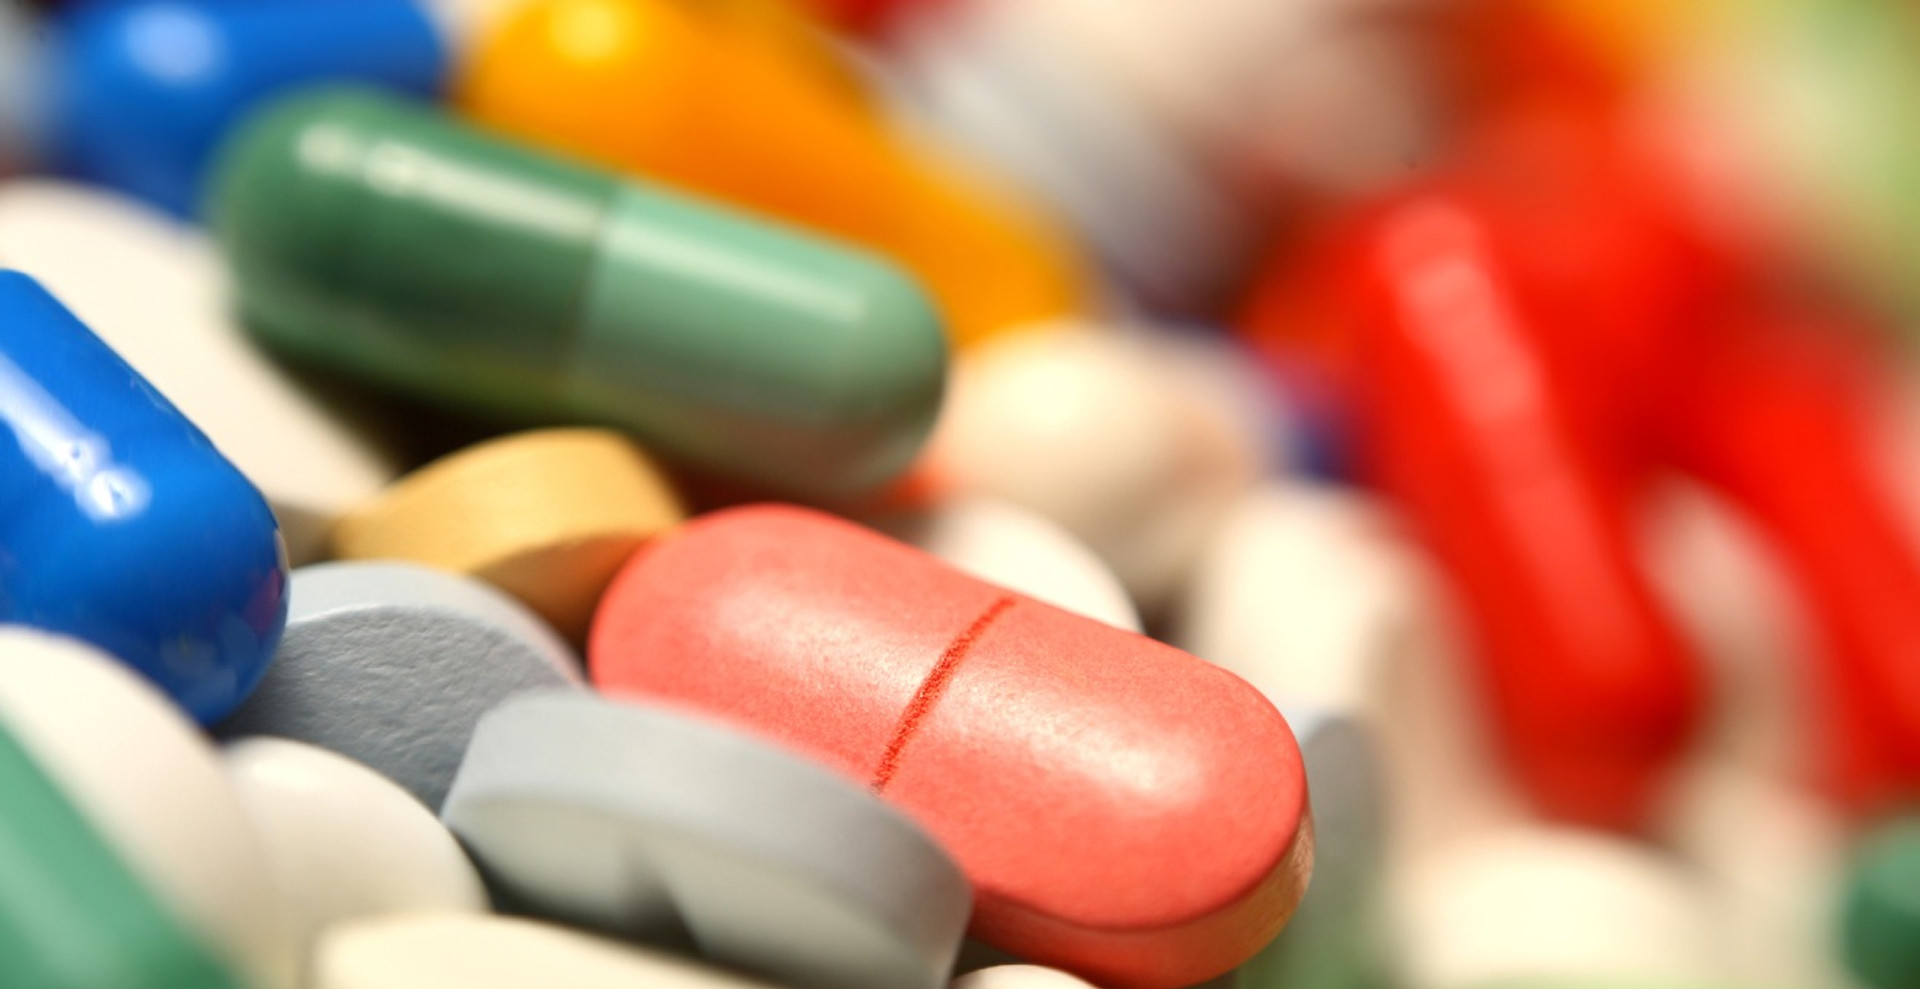 Безпечні, ефективні та якісні – чи залишаться такі ліки на ринку України?